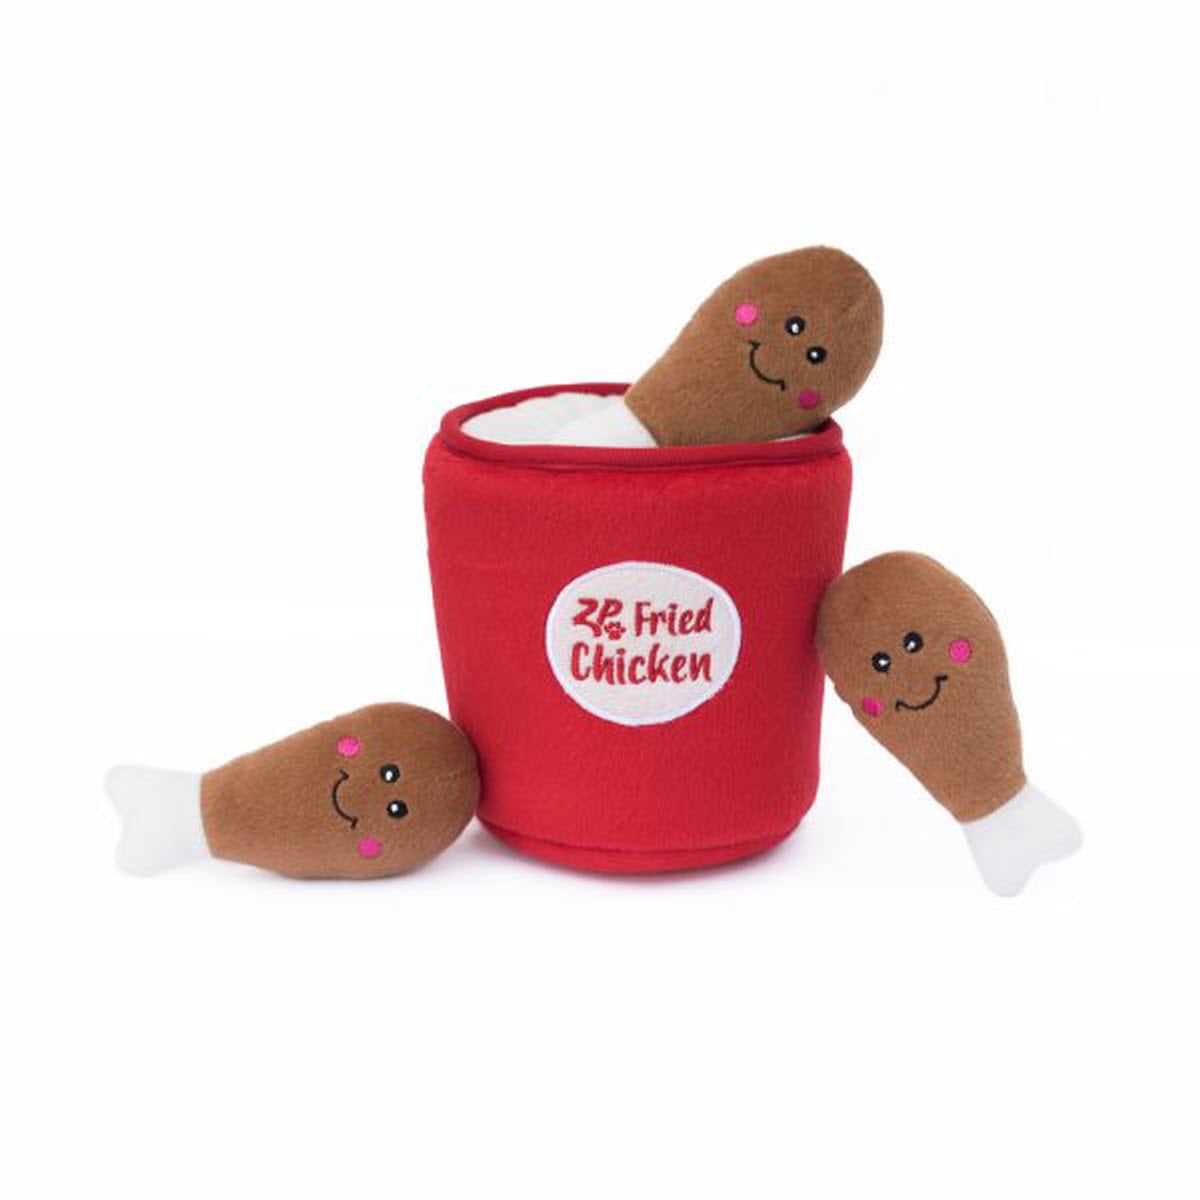 zippypaws squeaky plush dog toy